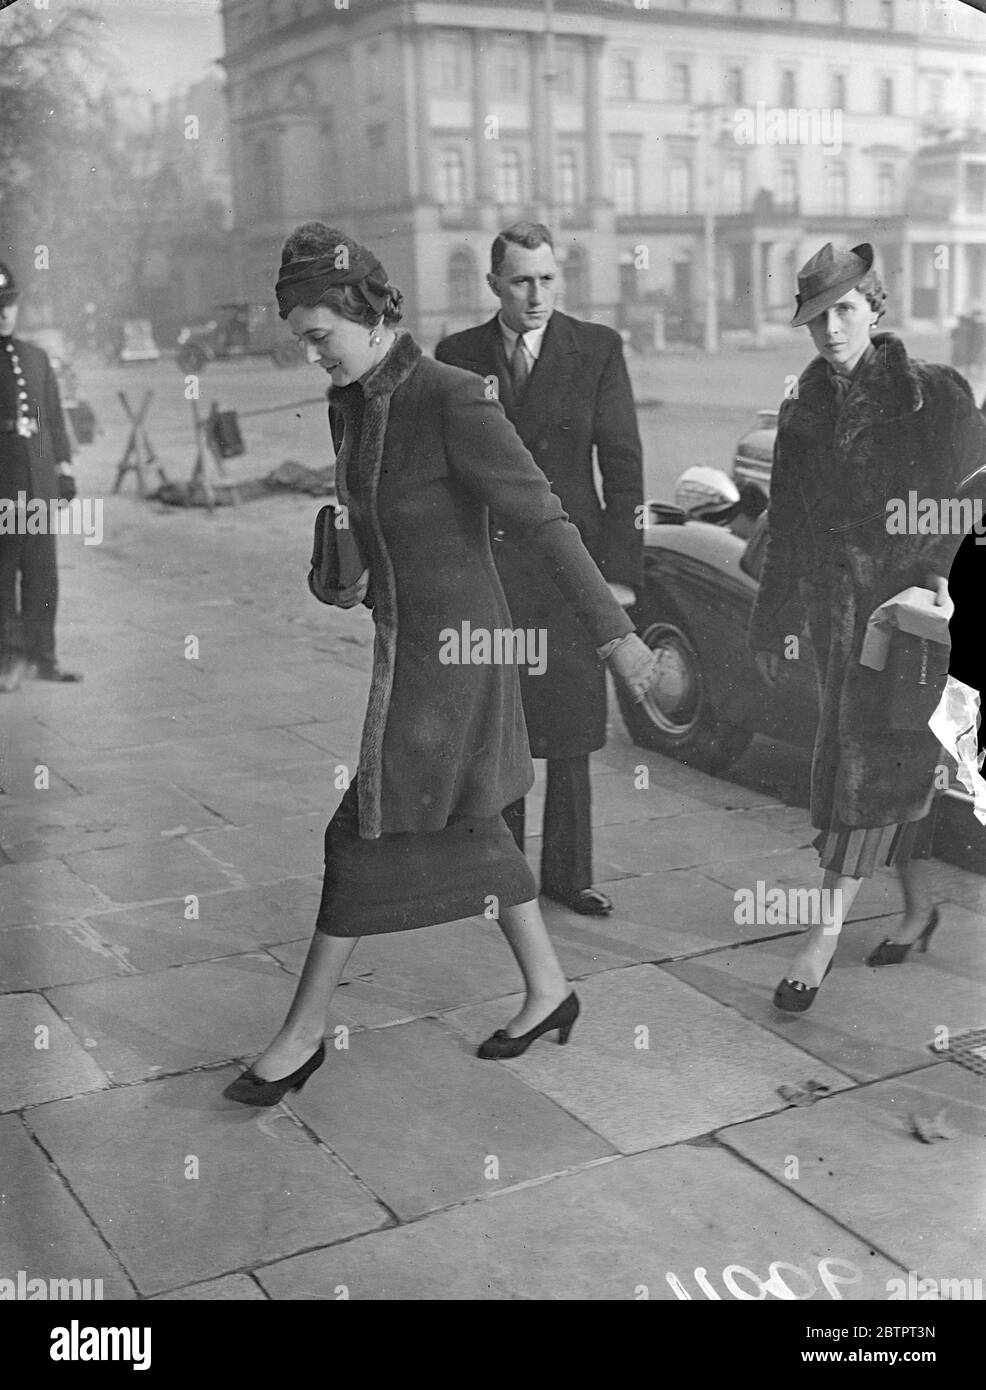 Duchess of Kents Wintermode. Die Herzogin von Kent, die einen Pelzmantel und einen passenden Turban-Hut trägt, als sie zum 3 Belgrave Square zurückkehrte. 10. November 1937 Stockfoto